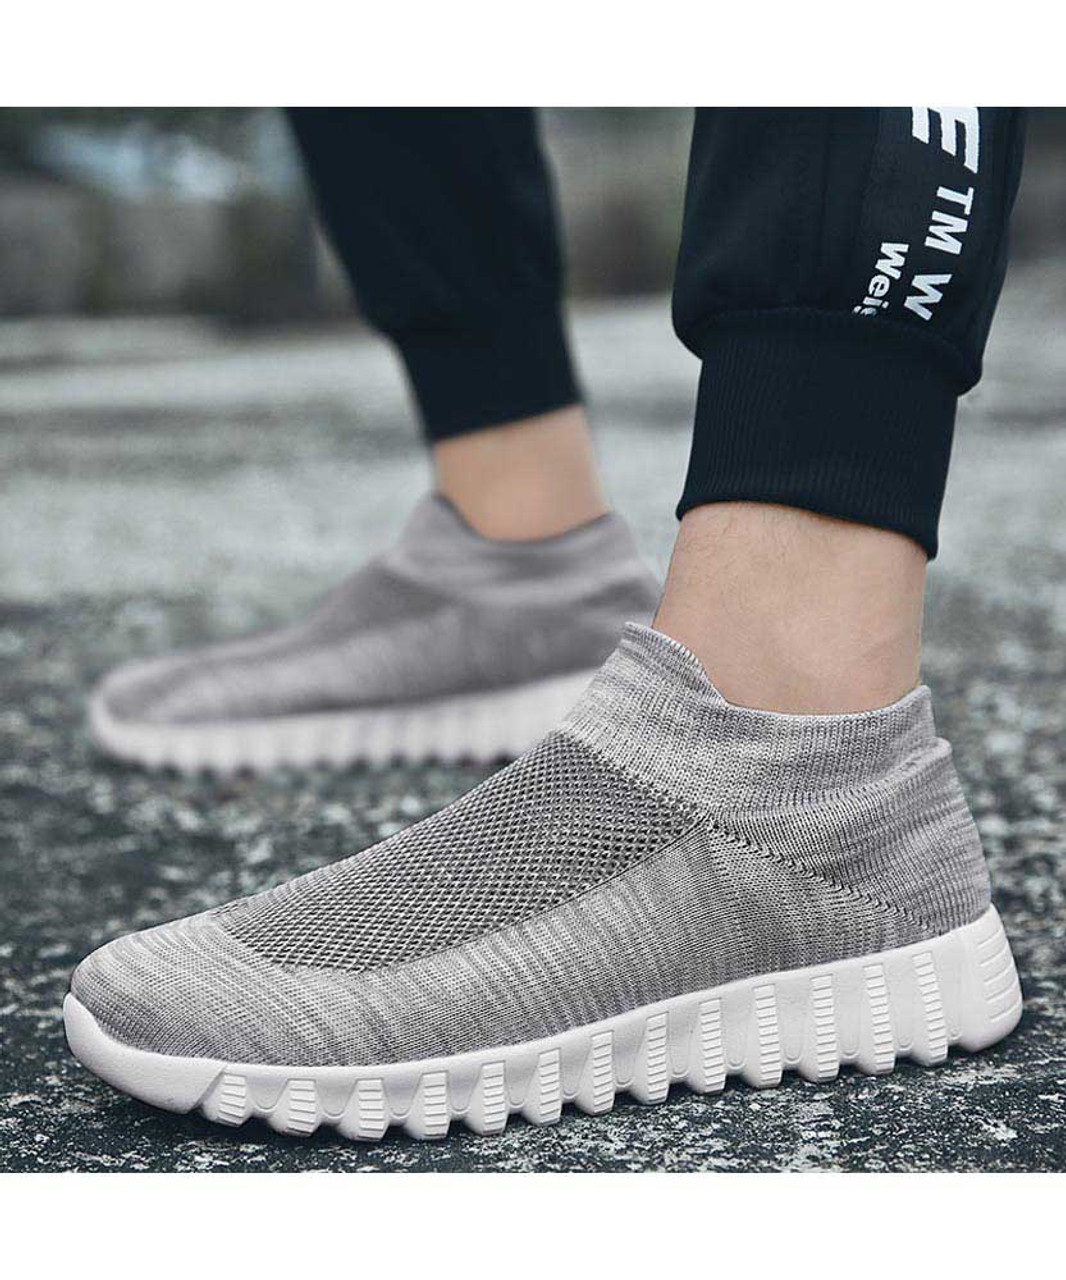 Grey flyknit textured slip on sock like fit shoe sneaker | Mens shoe ...